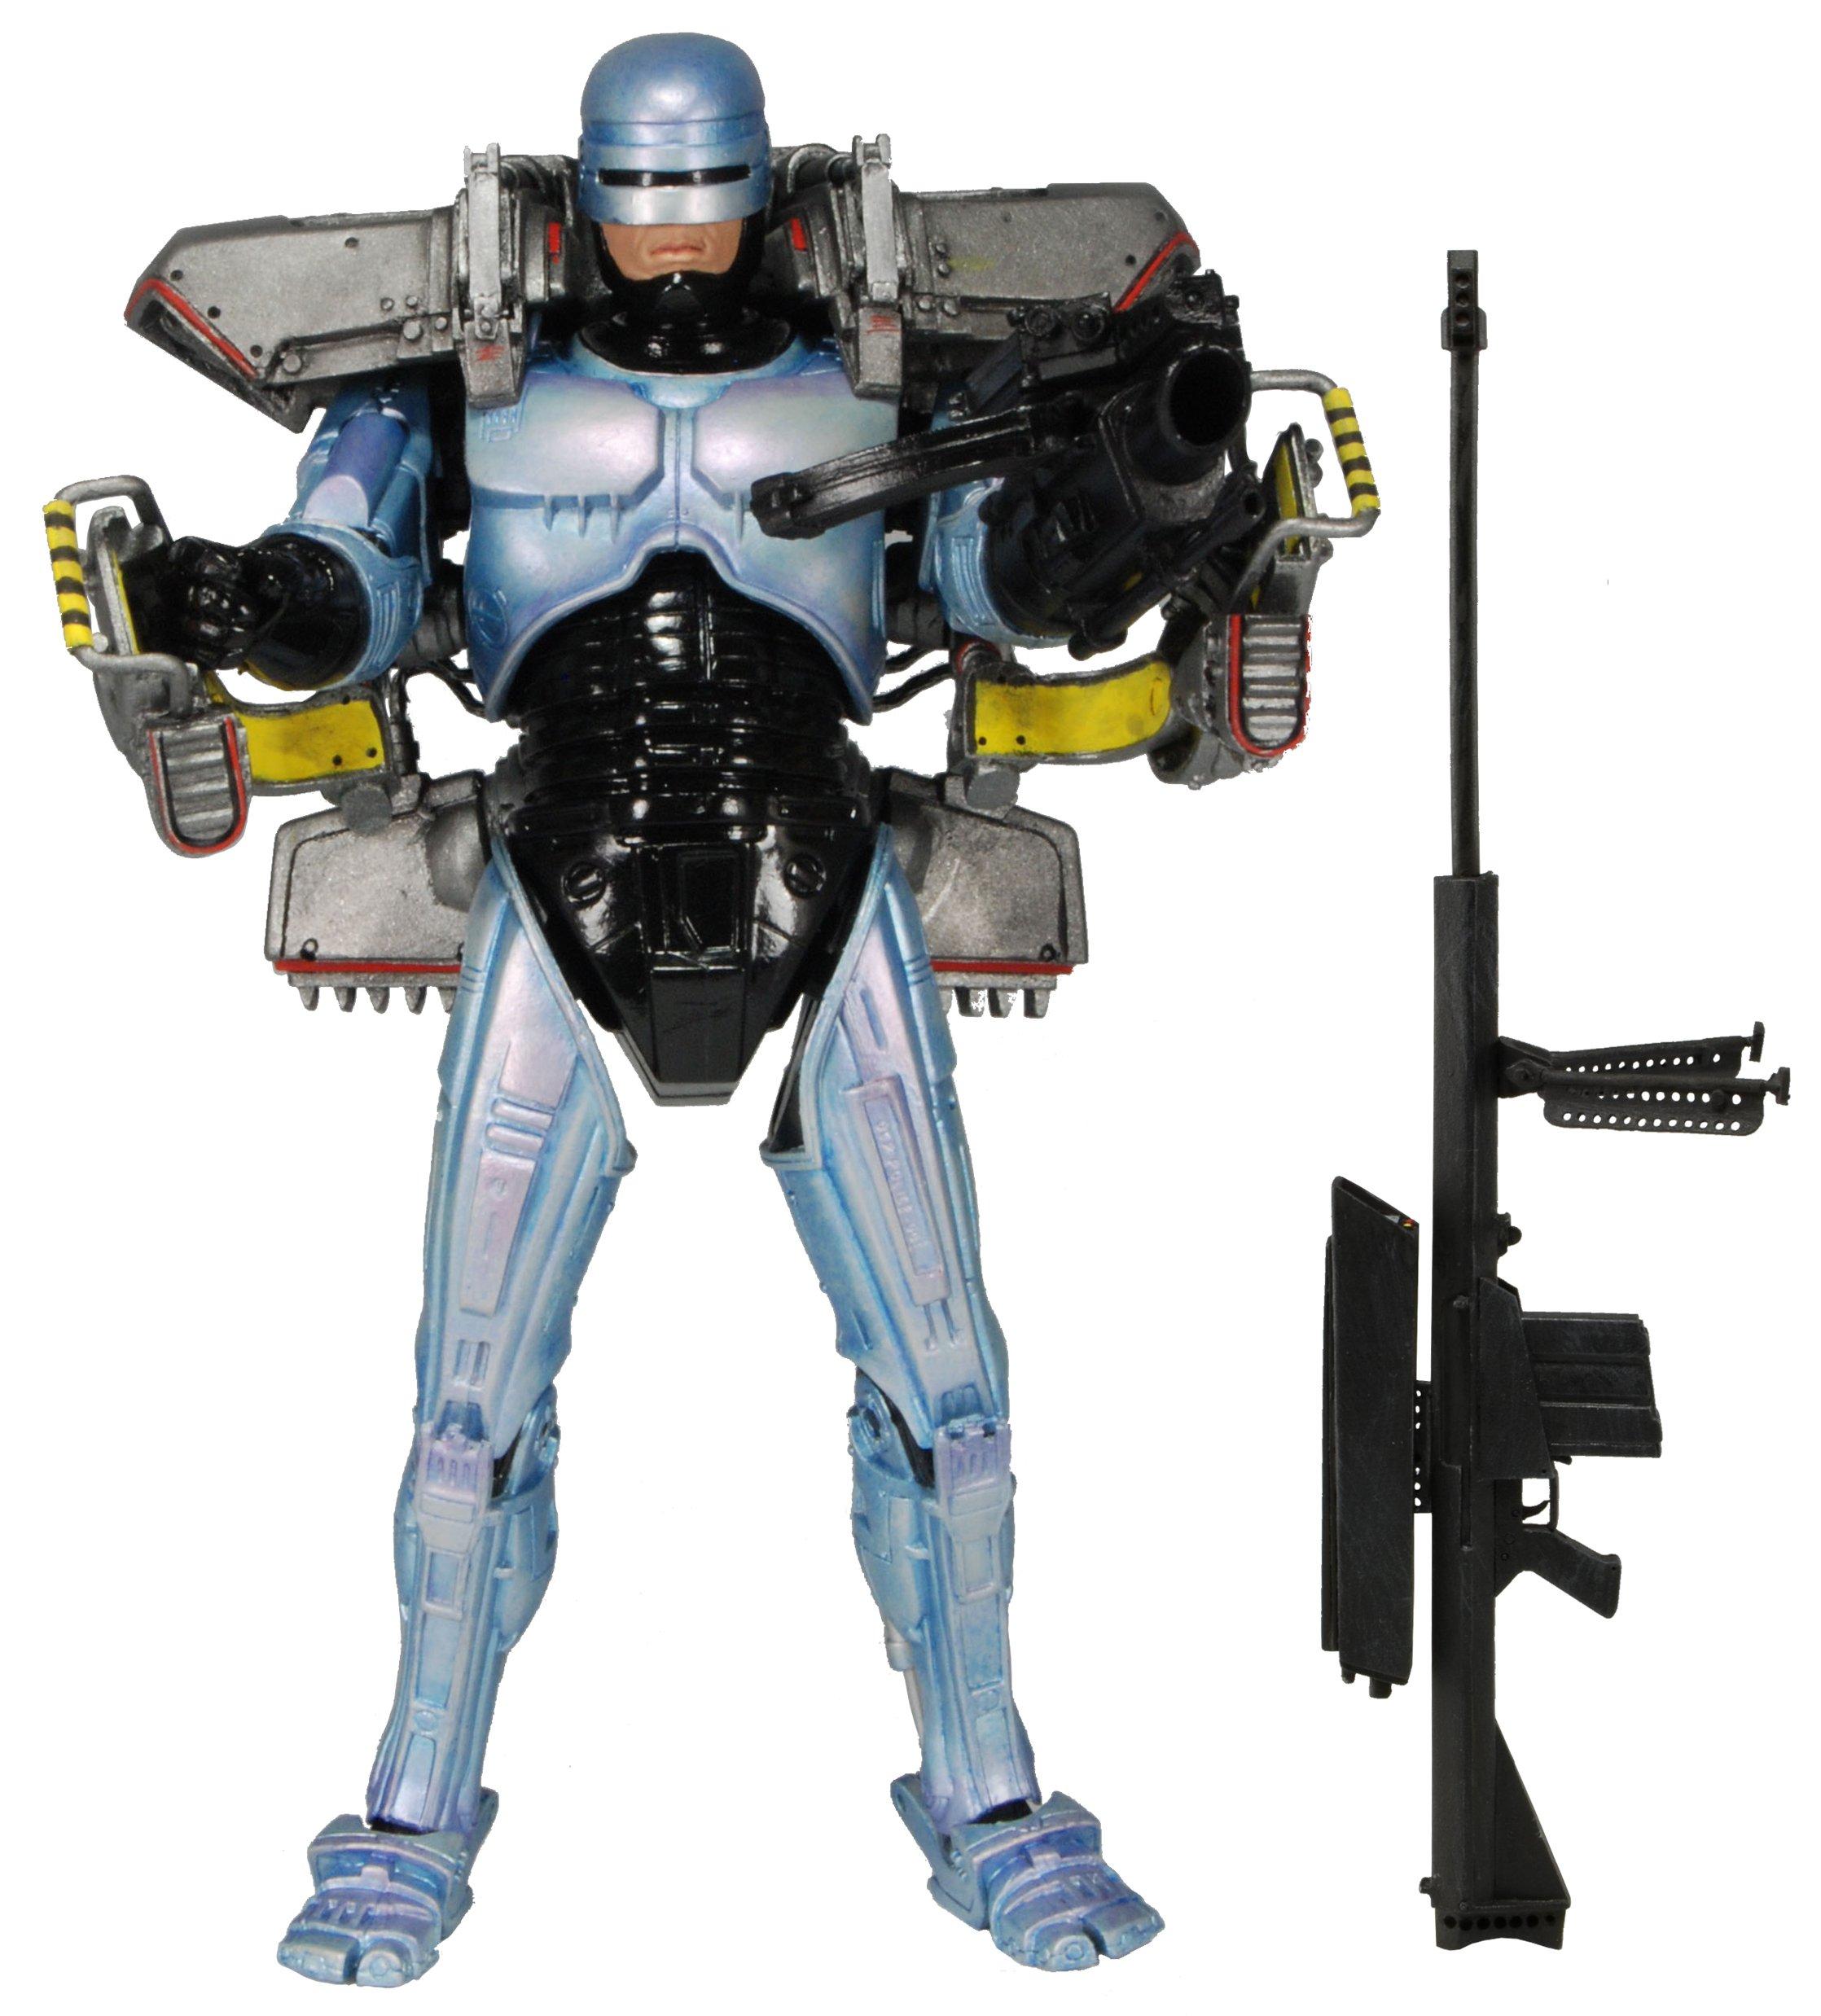 NECA Robocop Deluxe Scale Figure with Jetpack and Assault Cannon GameStop